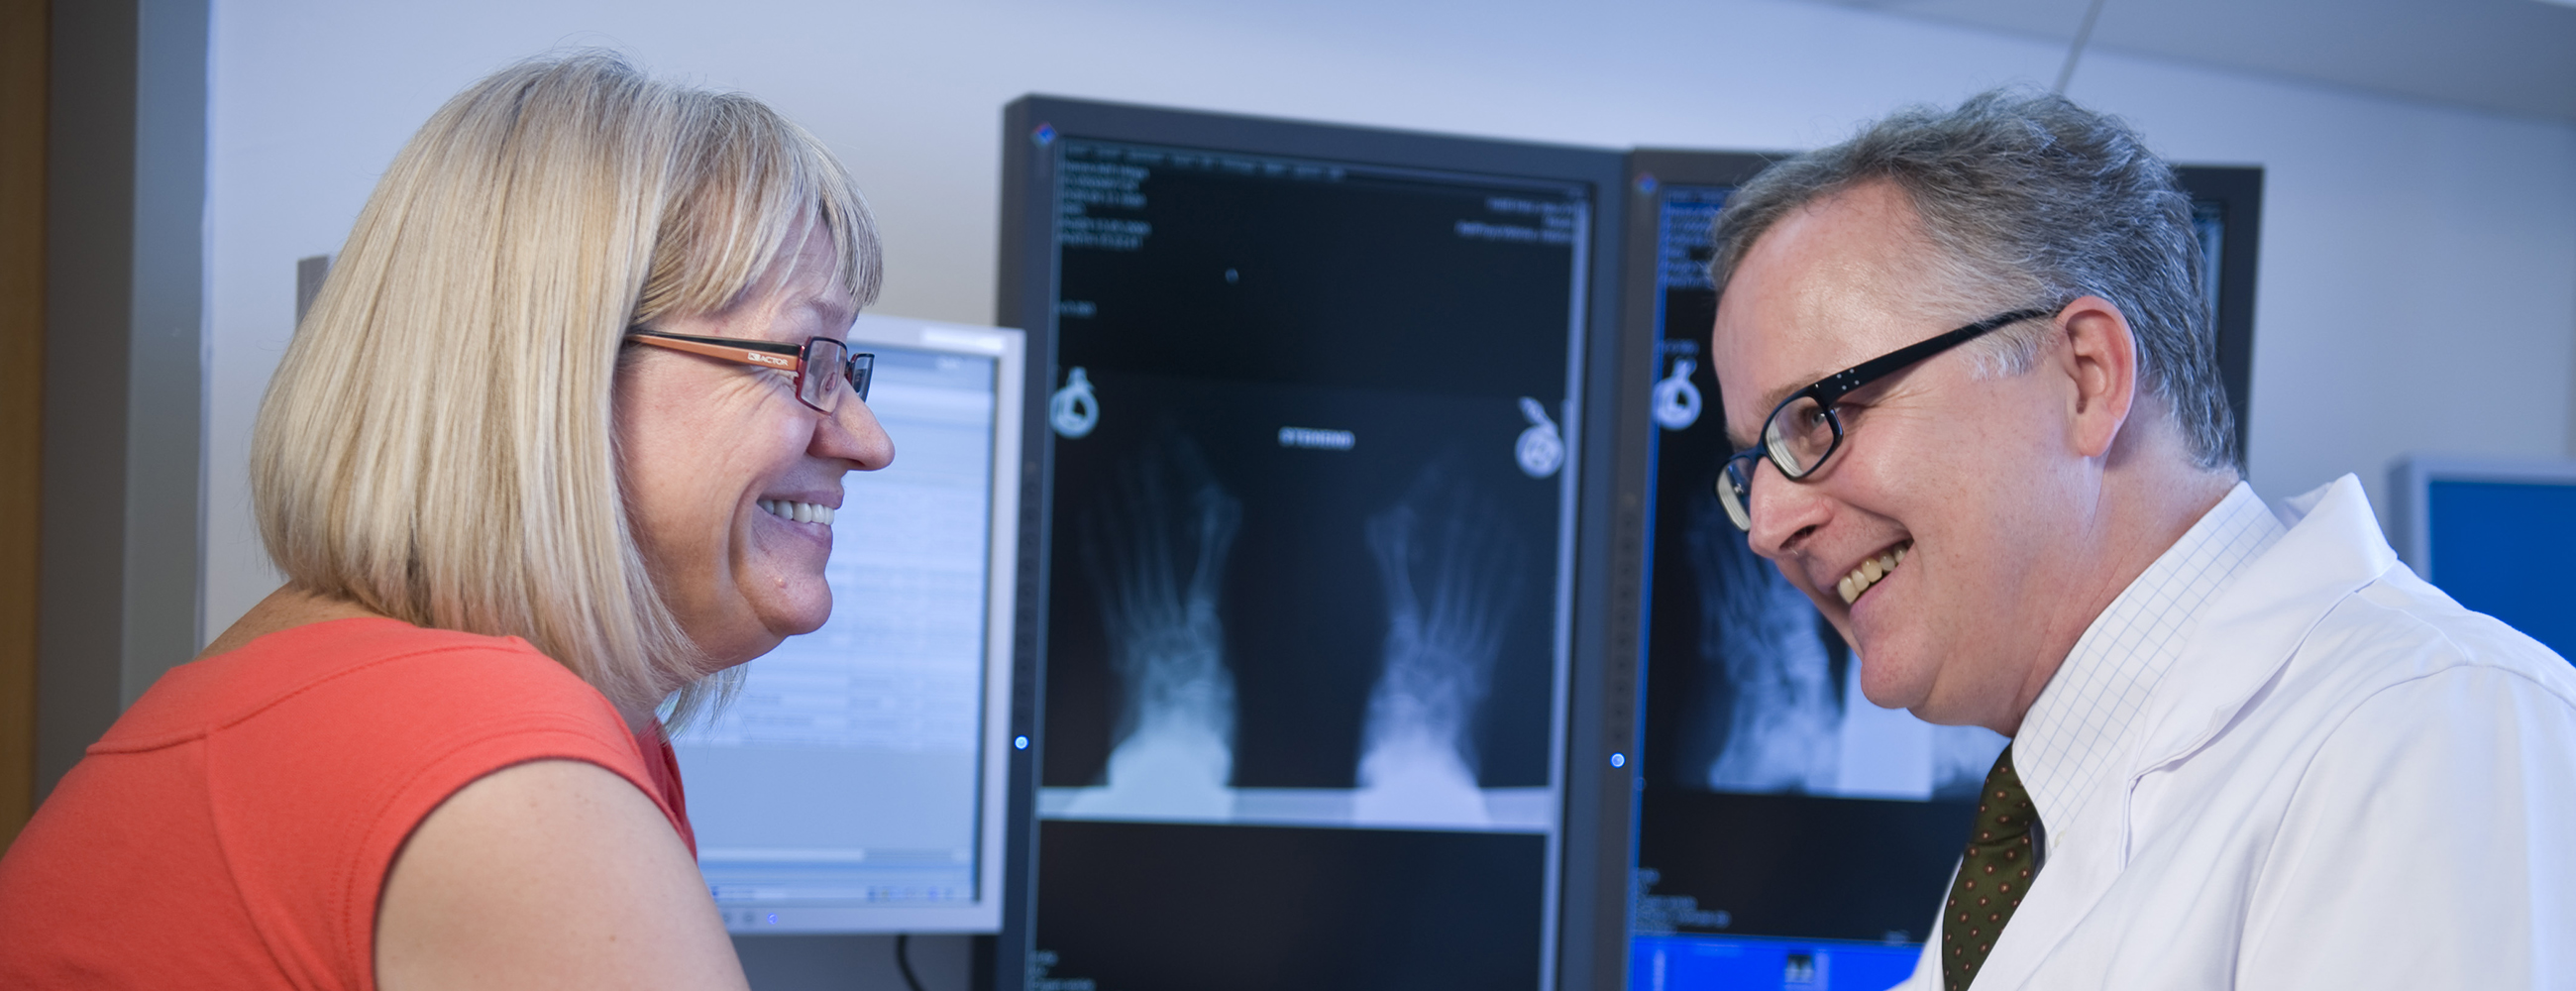 Blonde Patientin im Gespräch mit Arzt vor einem Röntgenbild